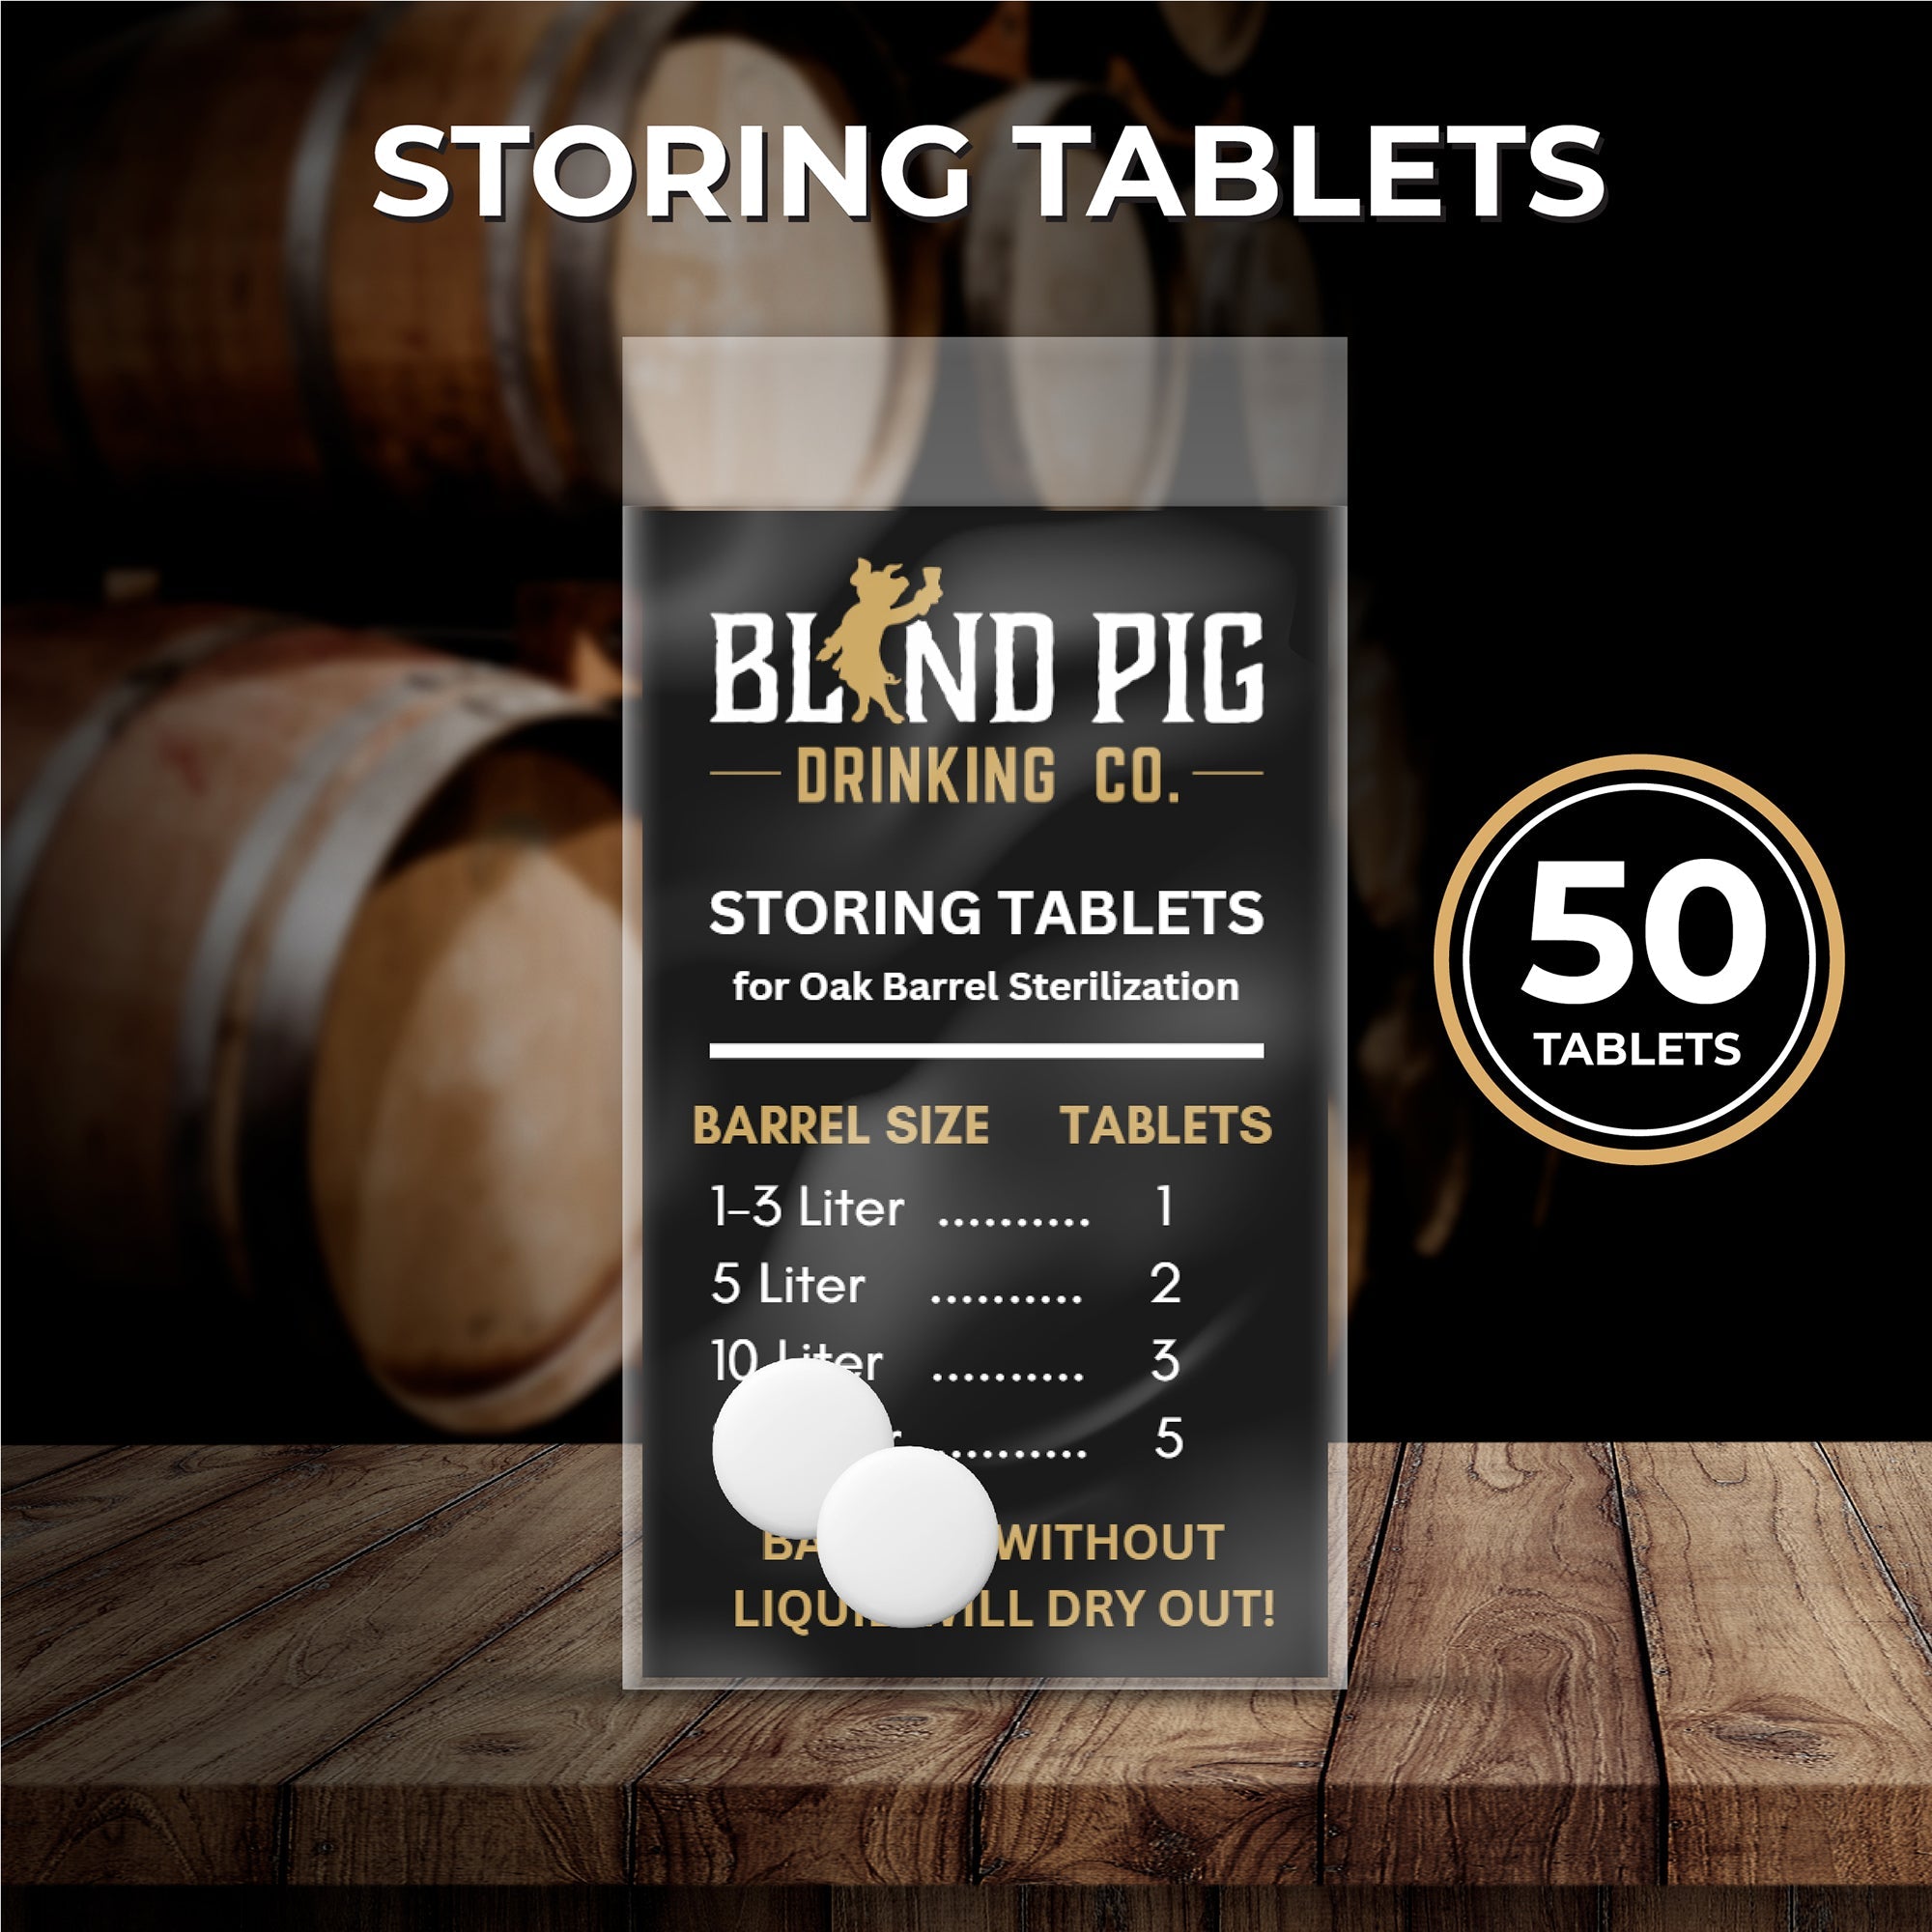 Oak Barrel Storing Tablets for Sterilization and Storage | Blind Pig Drinking Co. - Blind Pig Drinking Co.